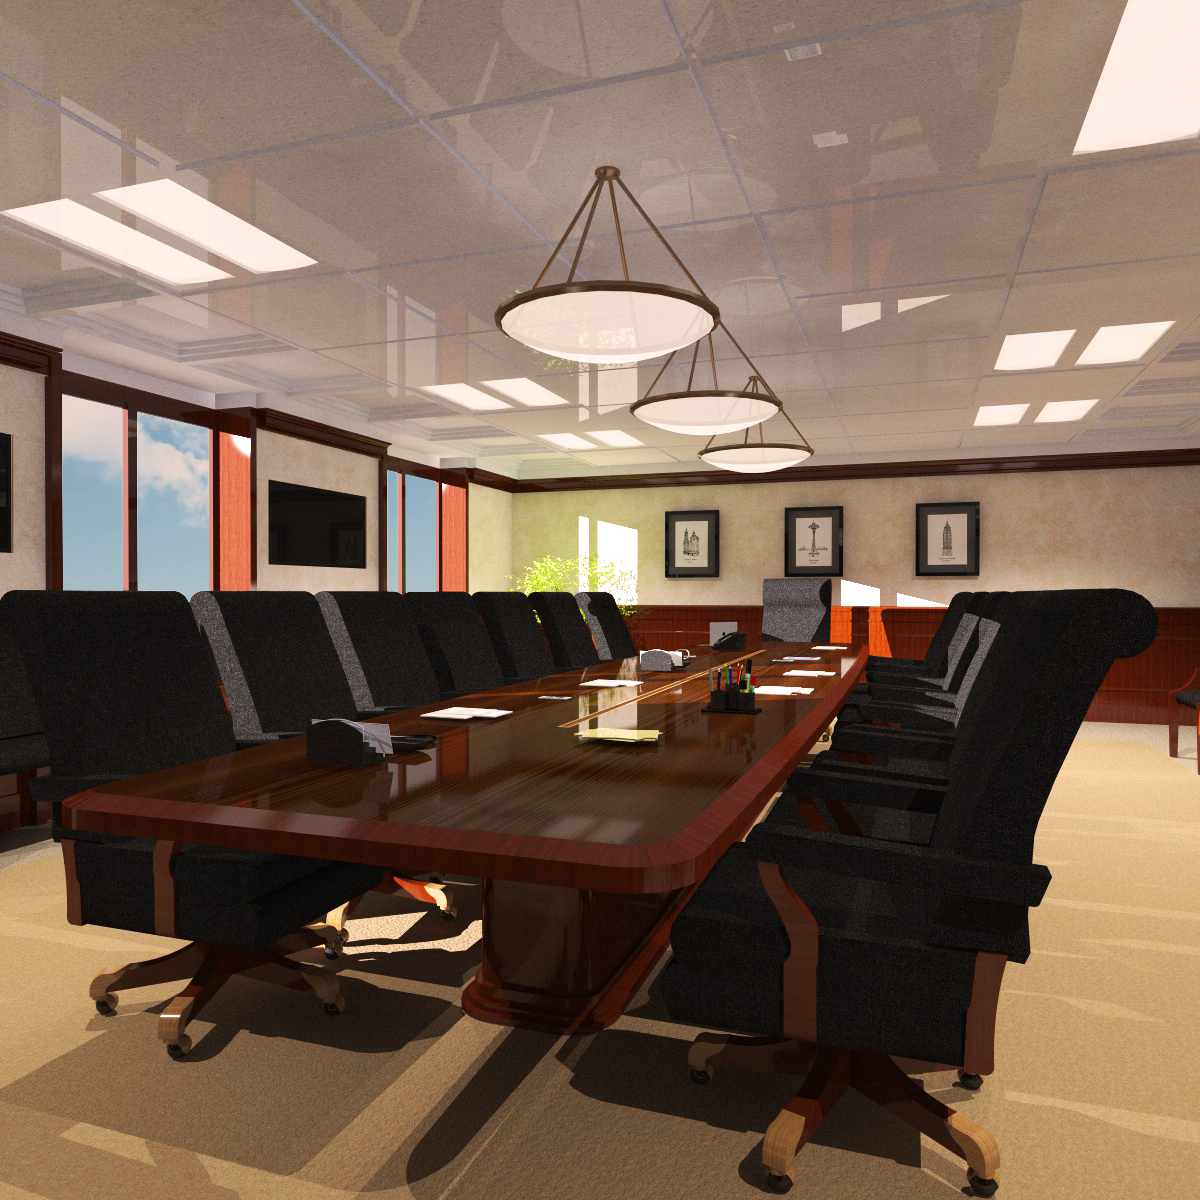 Office Meeting Room 3d Model Turbosquid 1311062